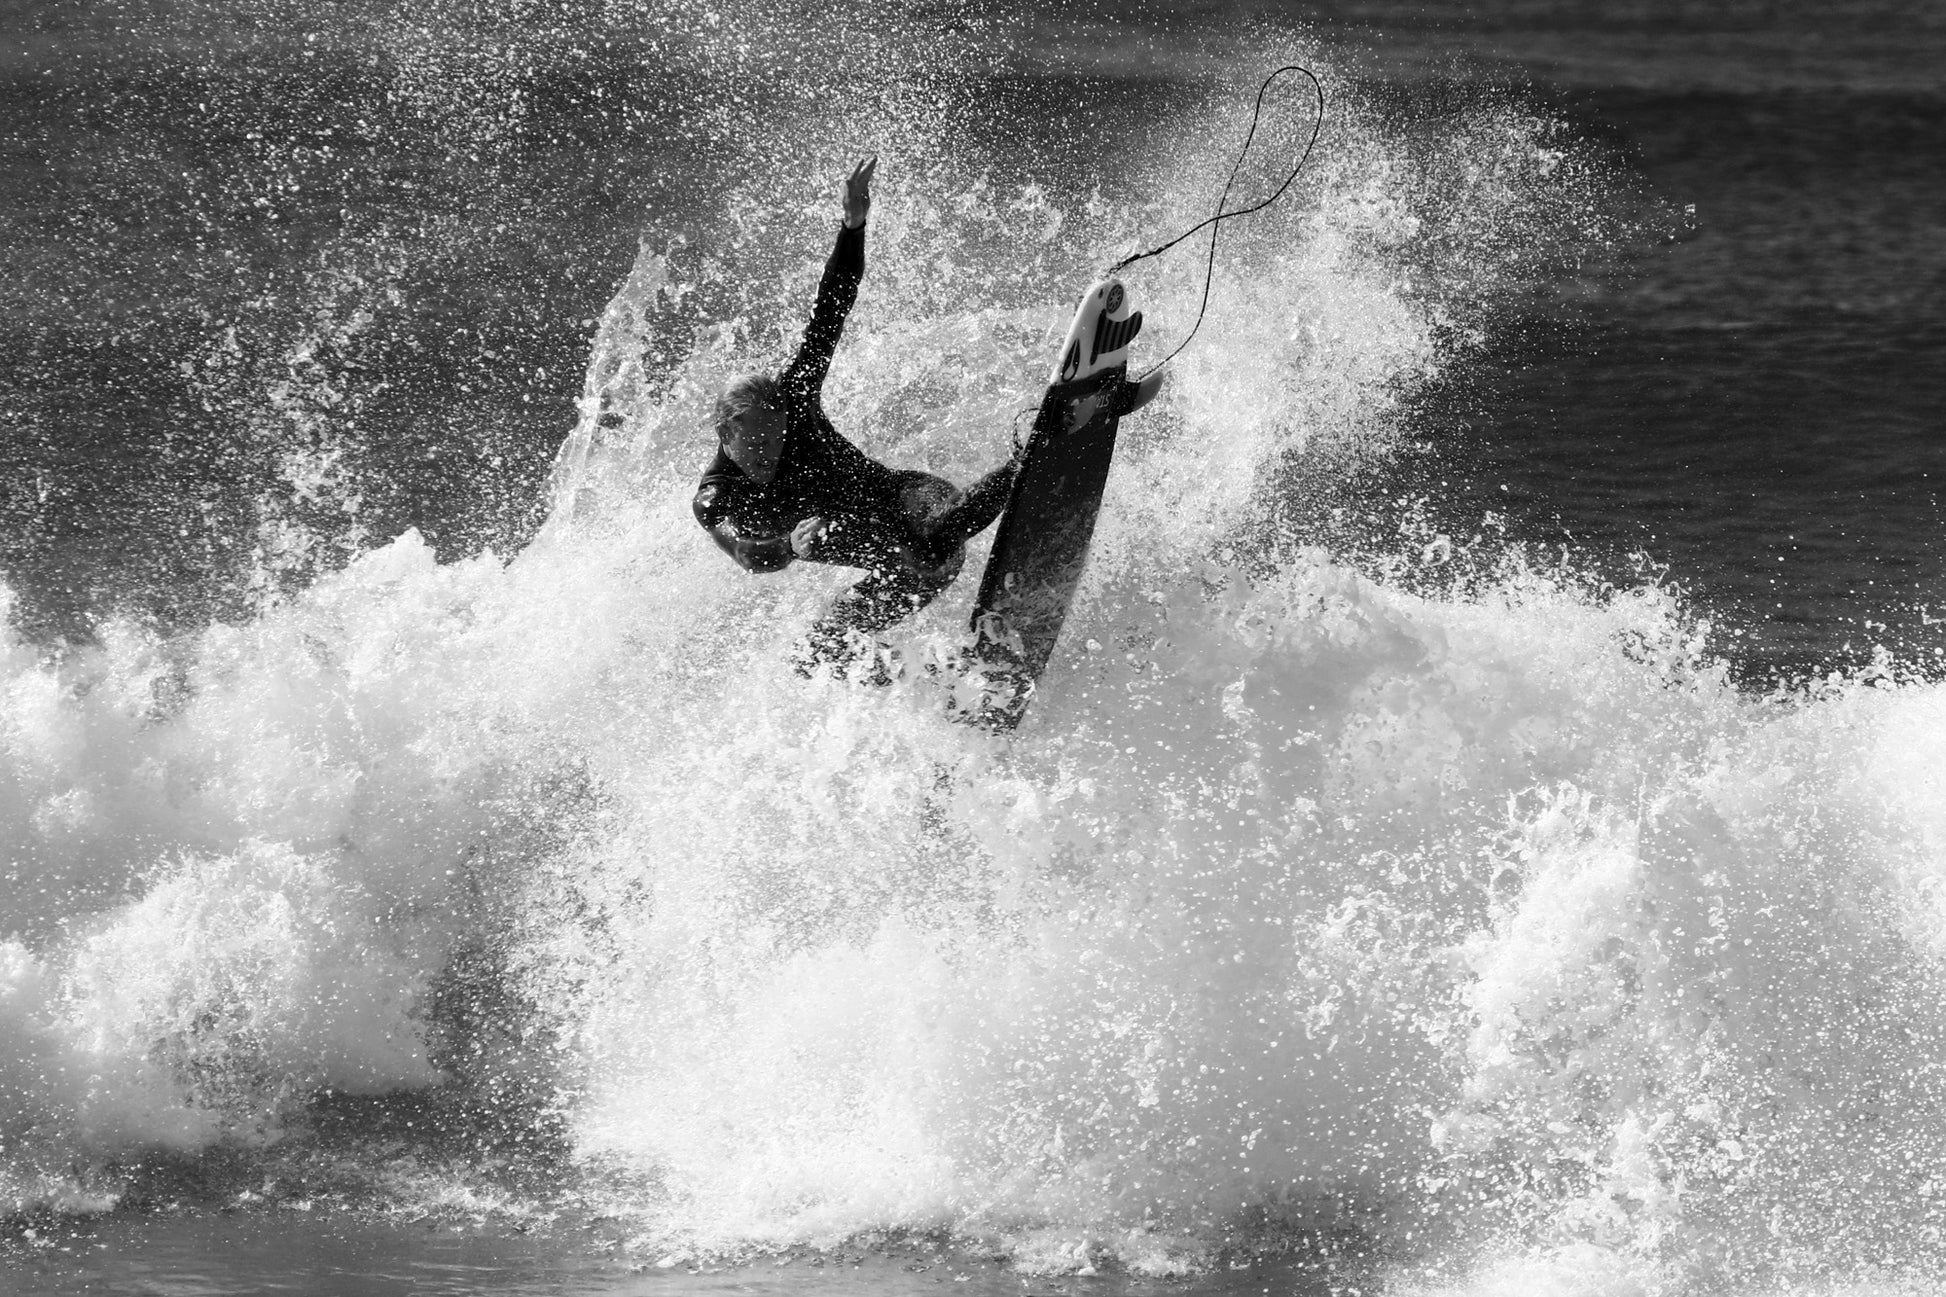 Image 28 - Modern Surfing